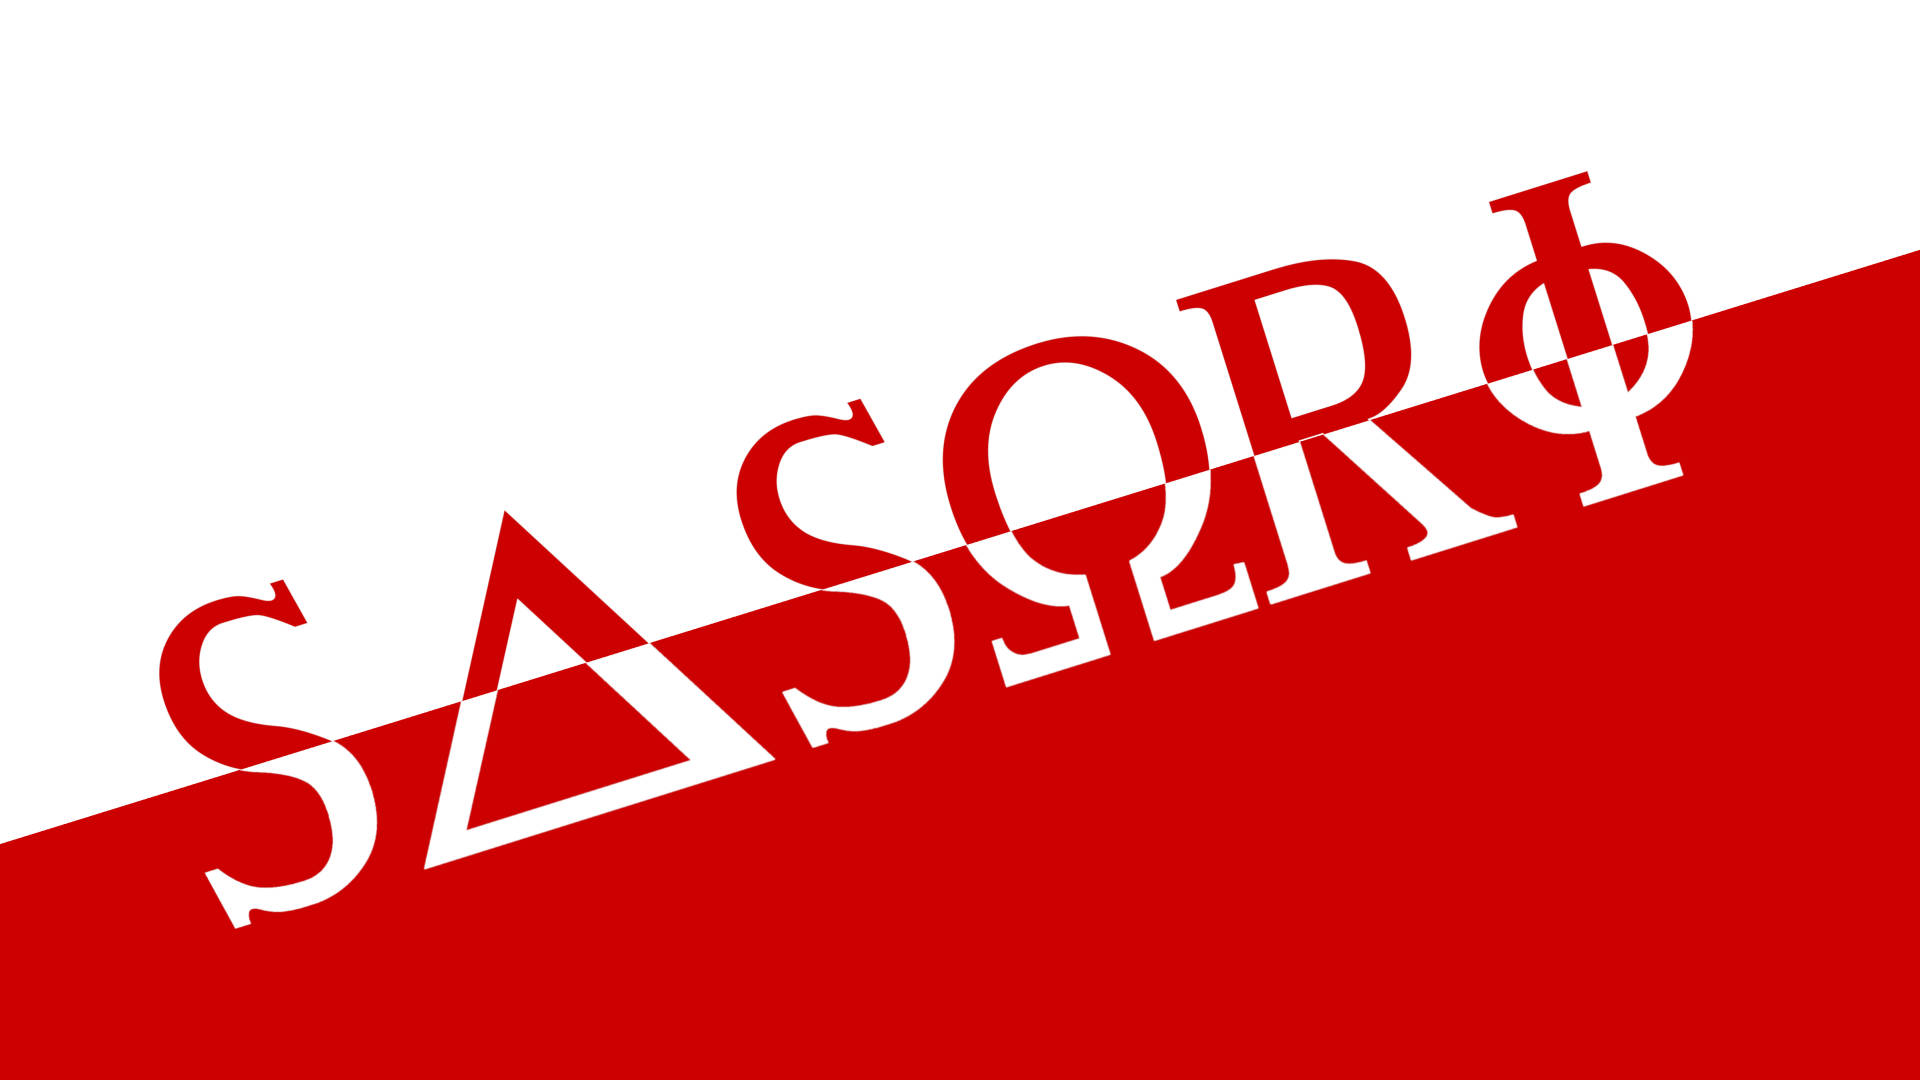 Sasori Name Logo Wallpaper